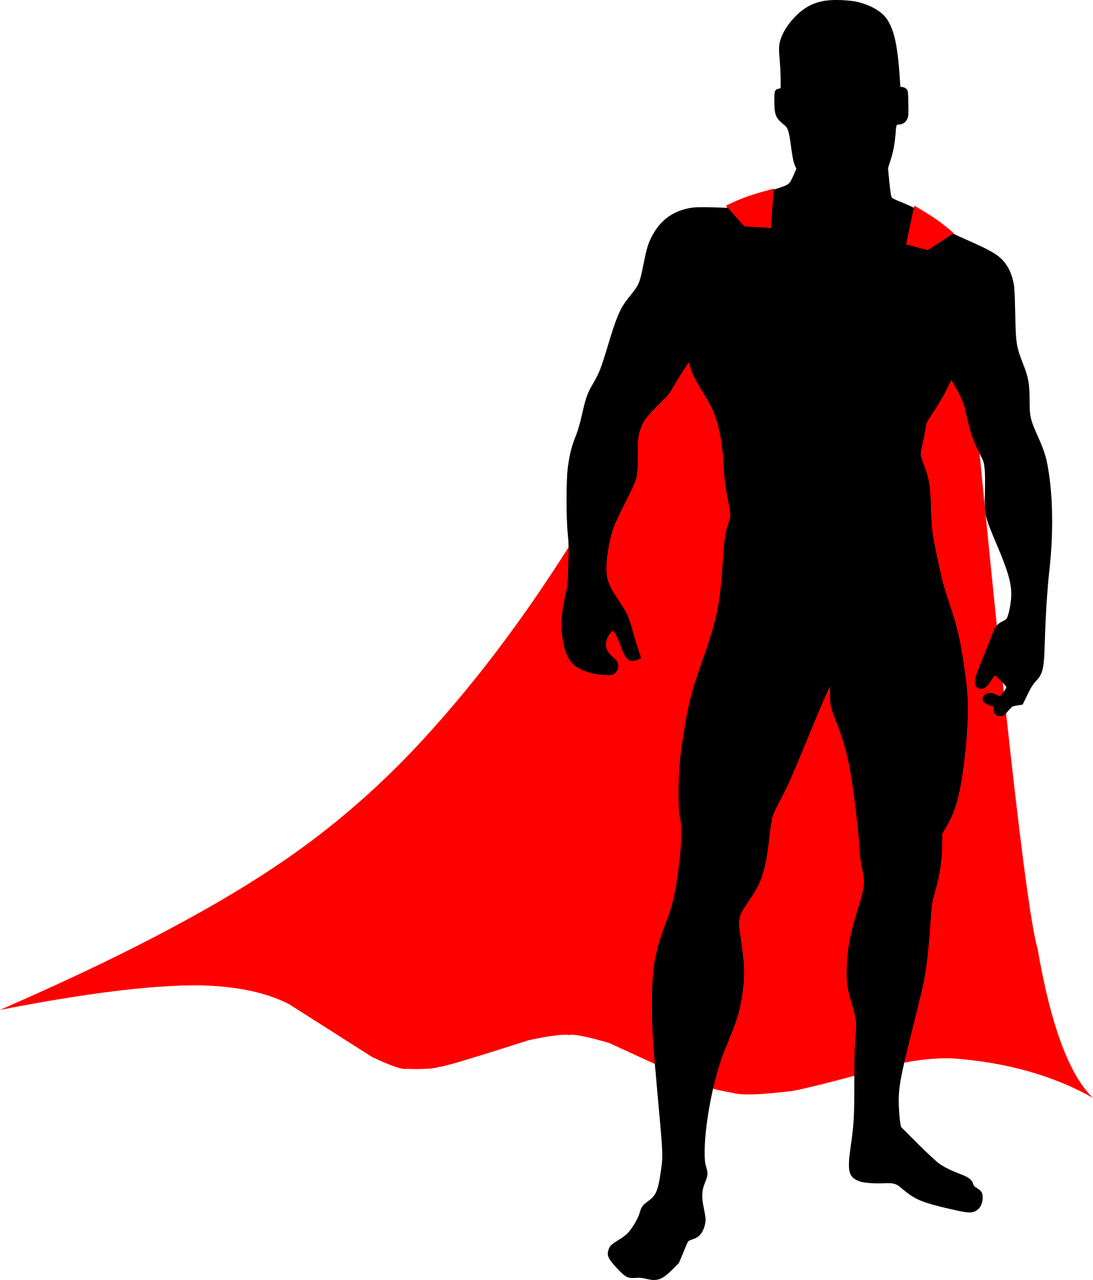 hero, silhouette, achievement-5142940.jpg